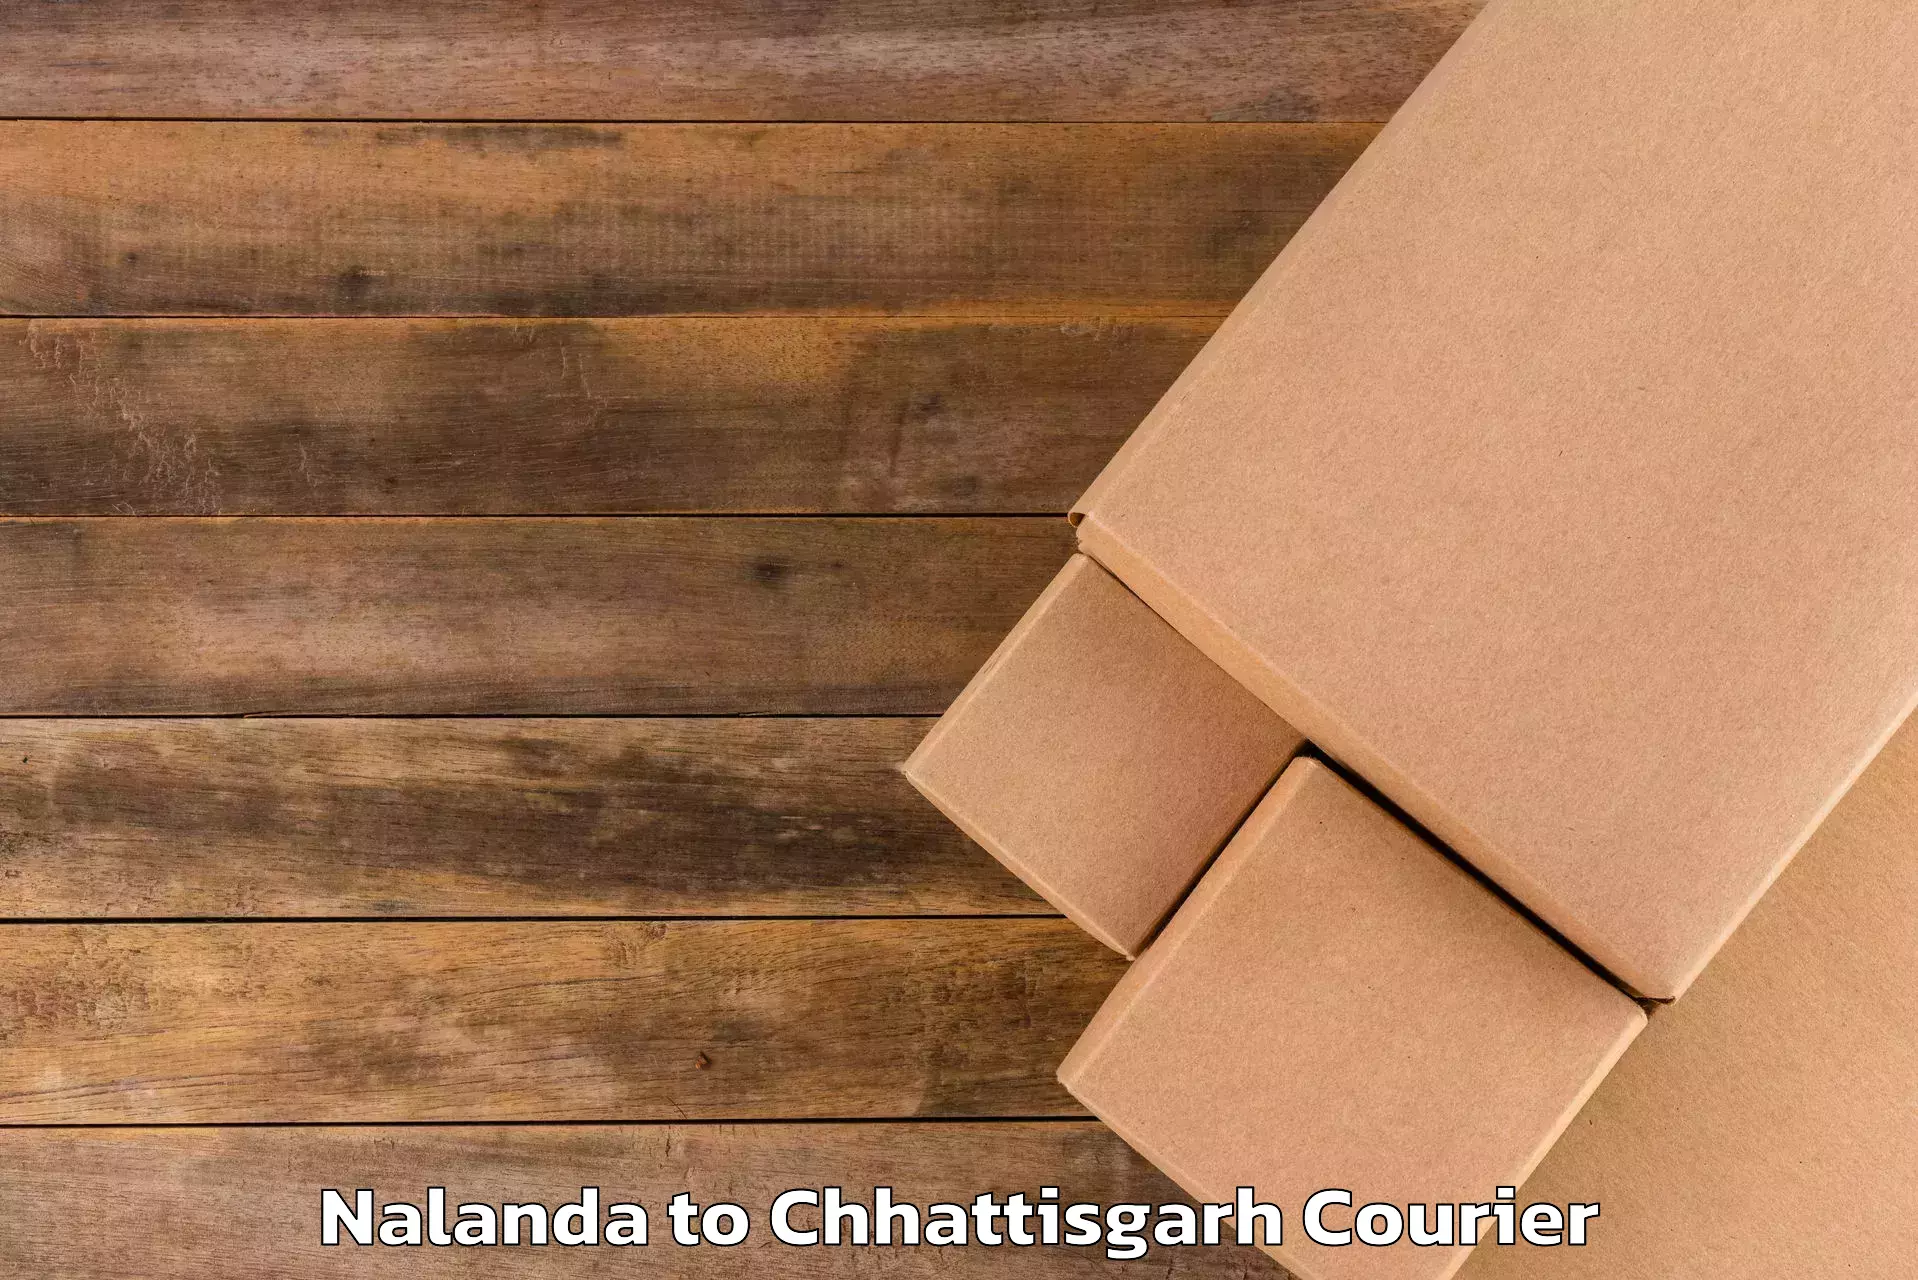 Luggage transport consulting Nalanda to Bastar